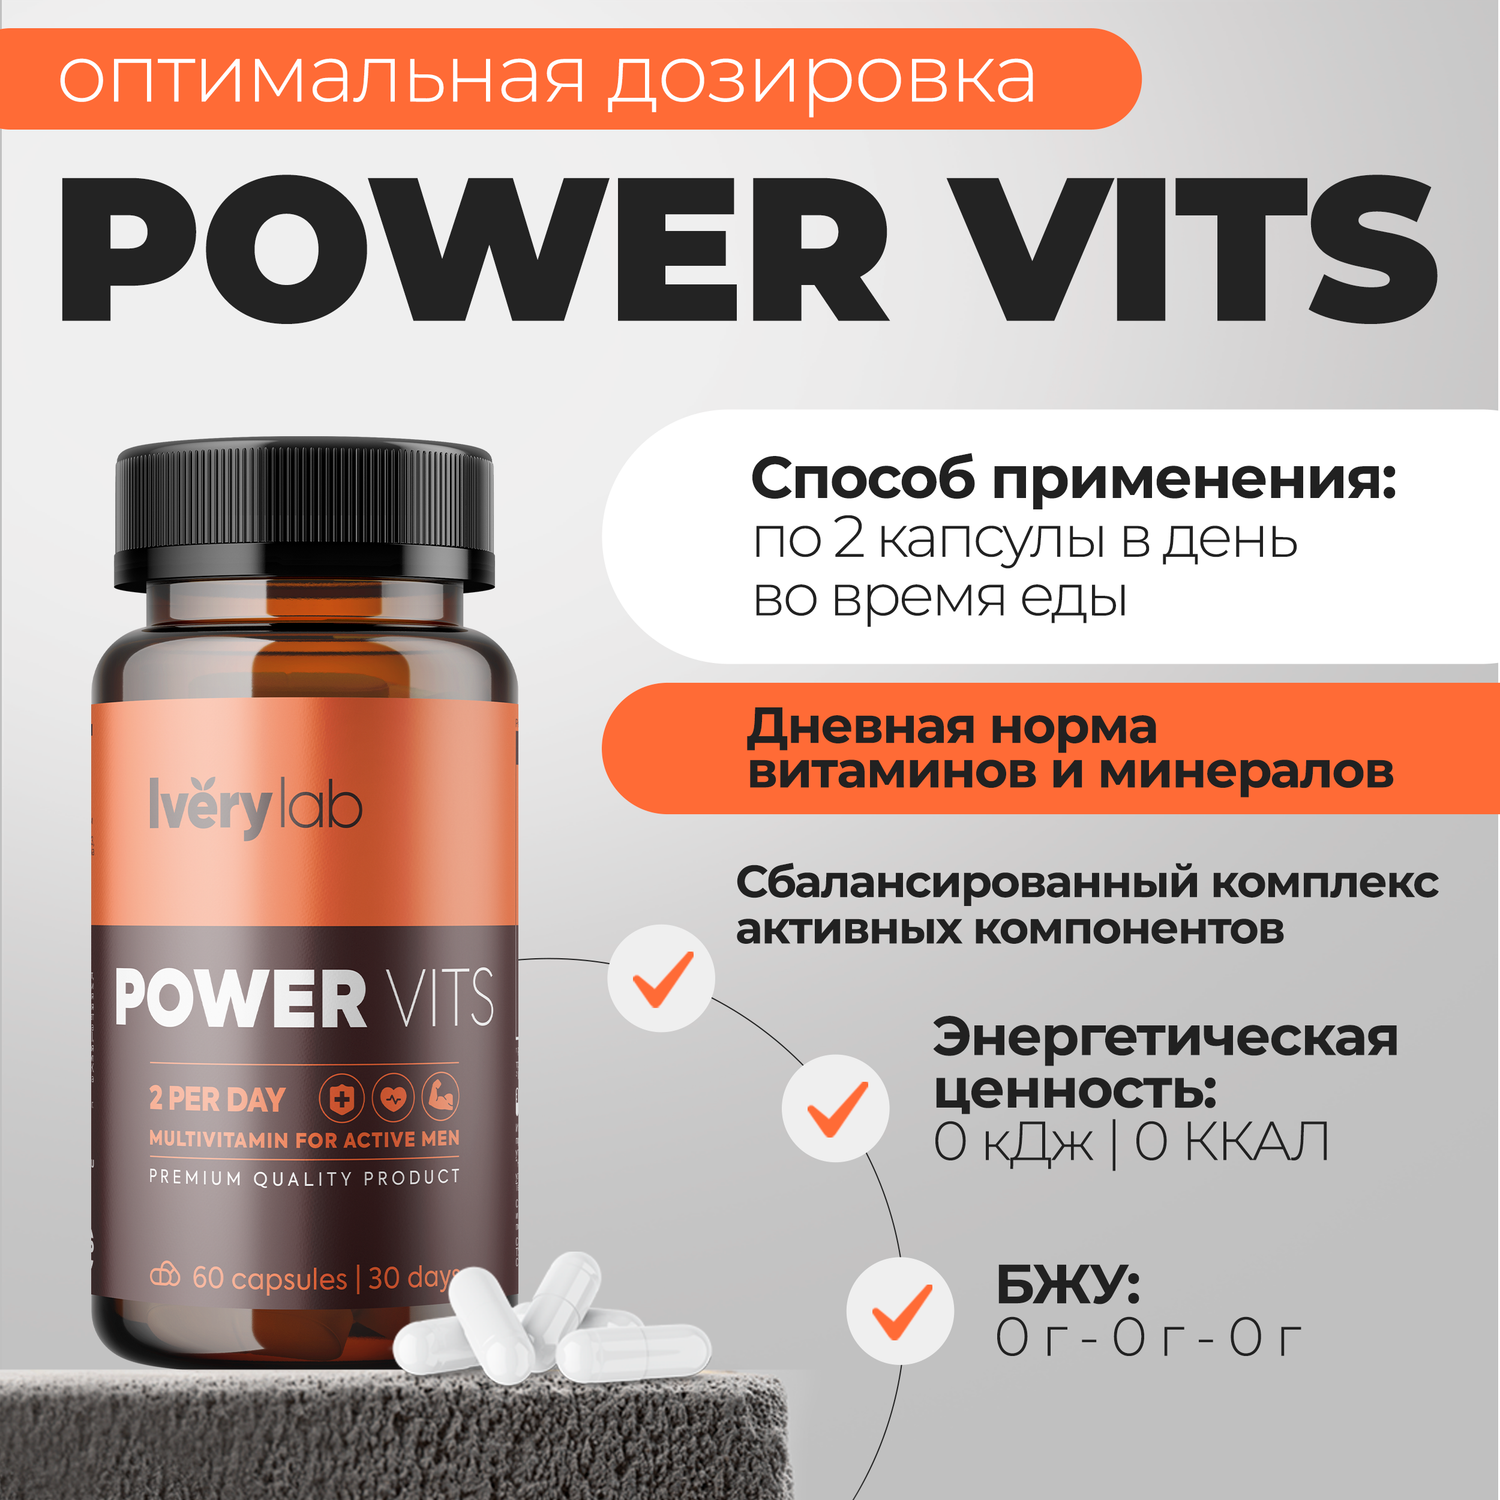 БАД Iverylab Мужской витаминно-минеральный комплекс для здоровья и функциональной поддержки Power Vits - фото 3